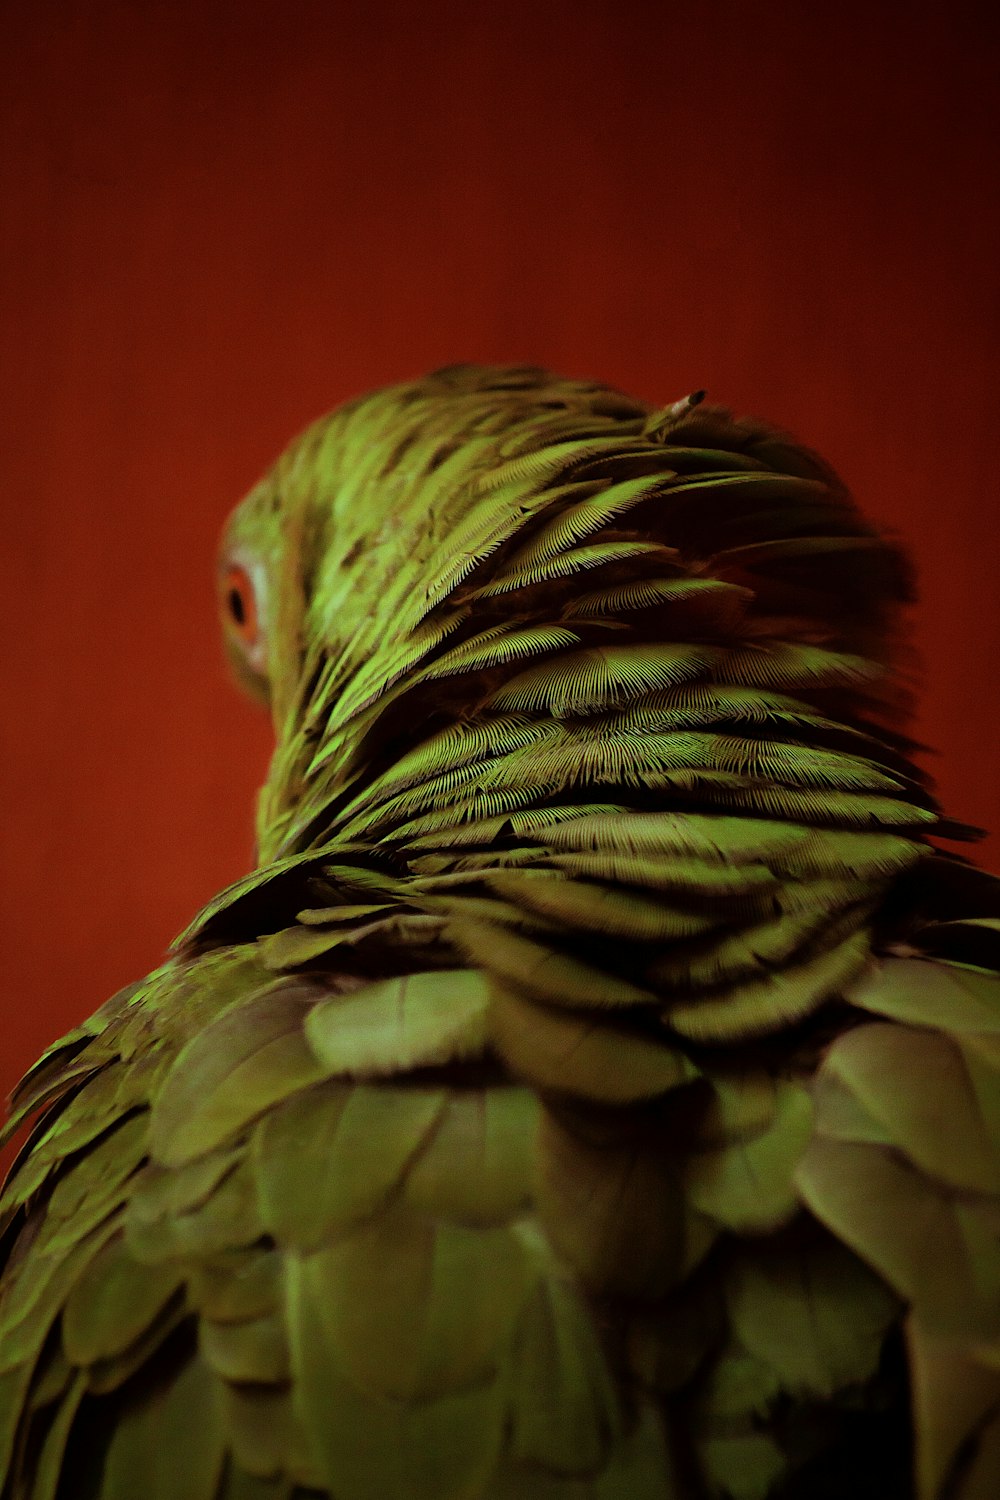 Un primer plano de un pájaro verde con un fondo rojo